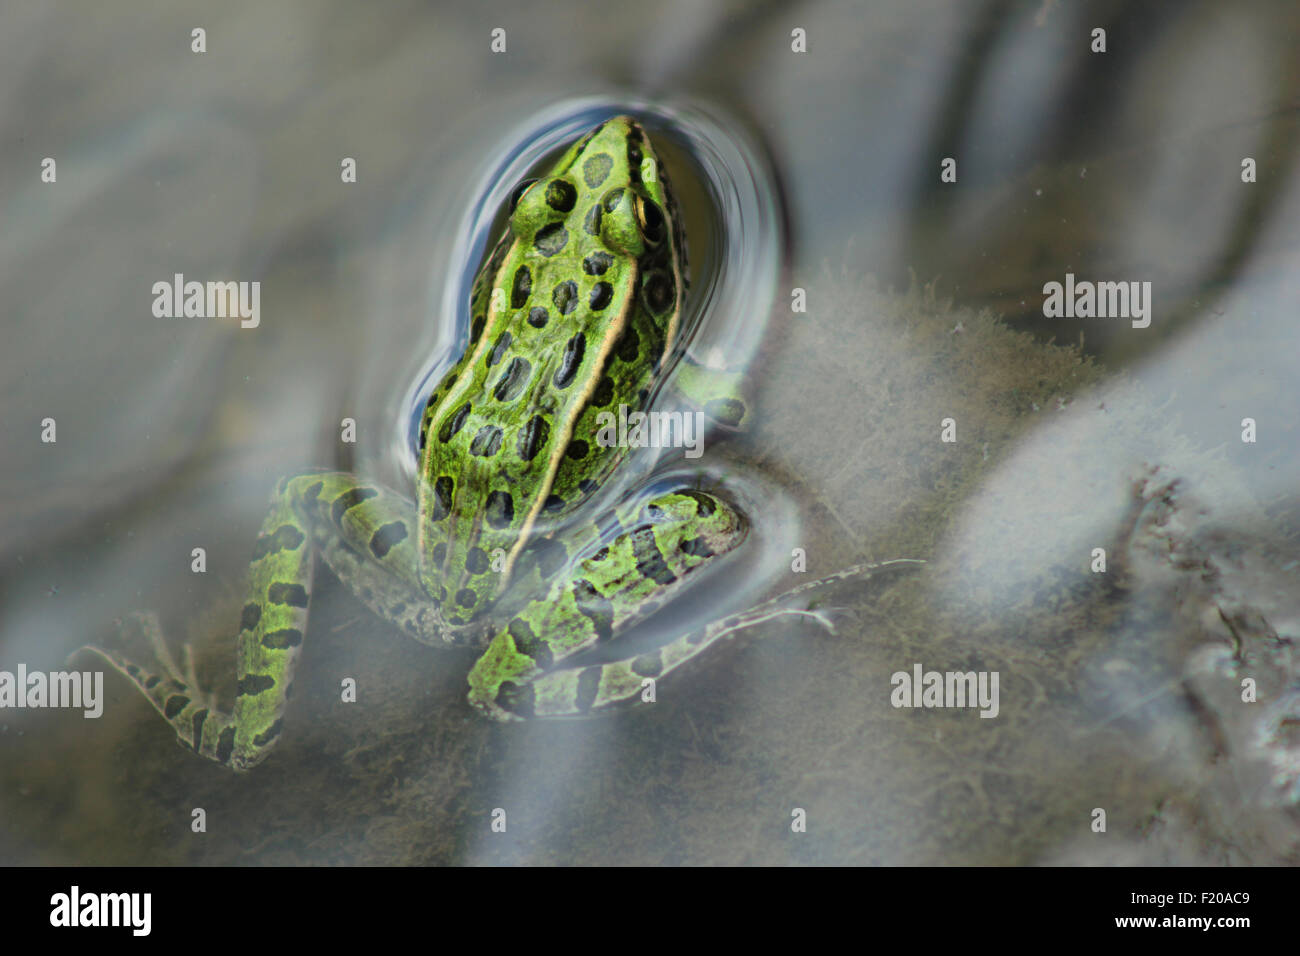 Grüner Frosch Bild Stockfotos und -bilder Kaufen - Alamy